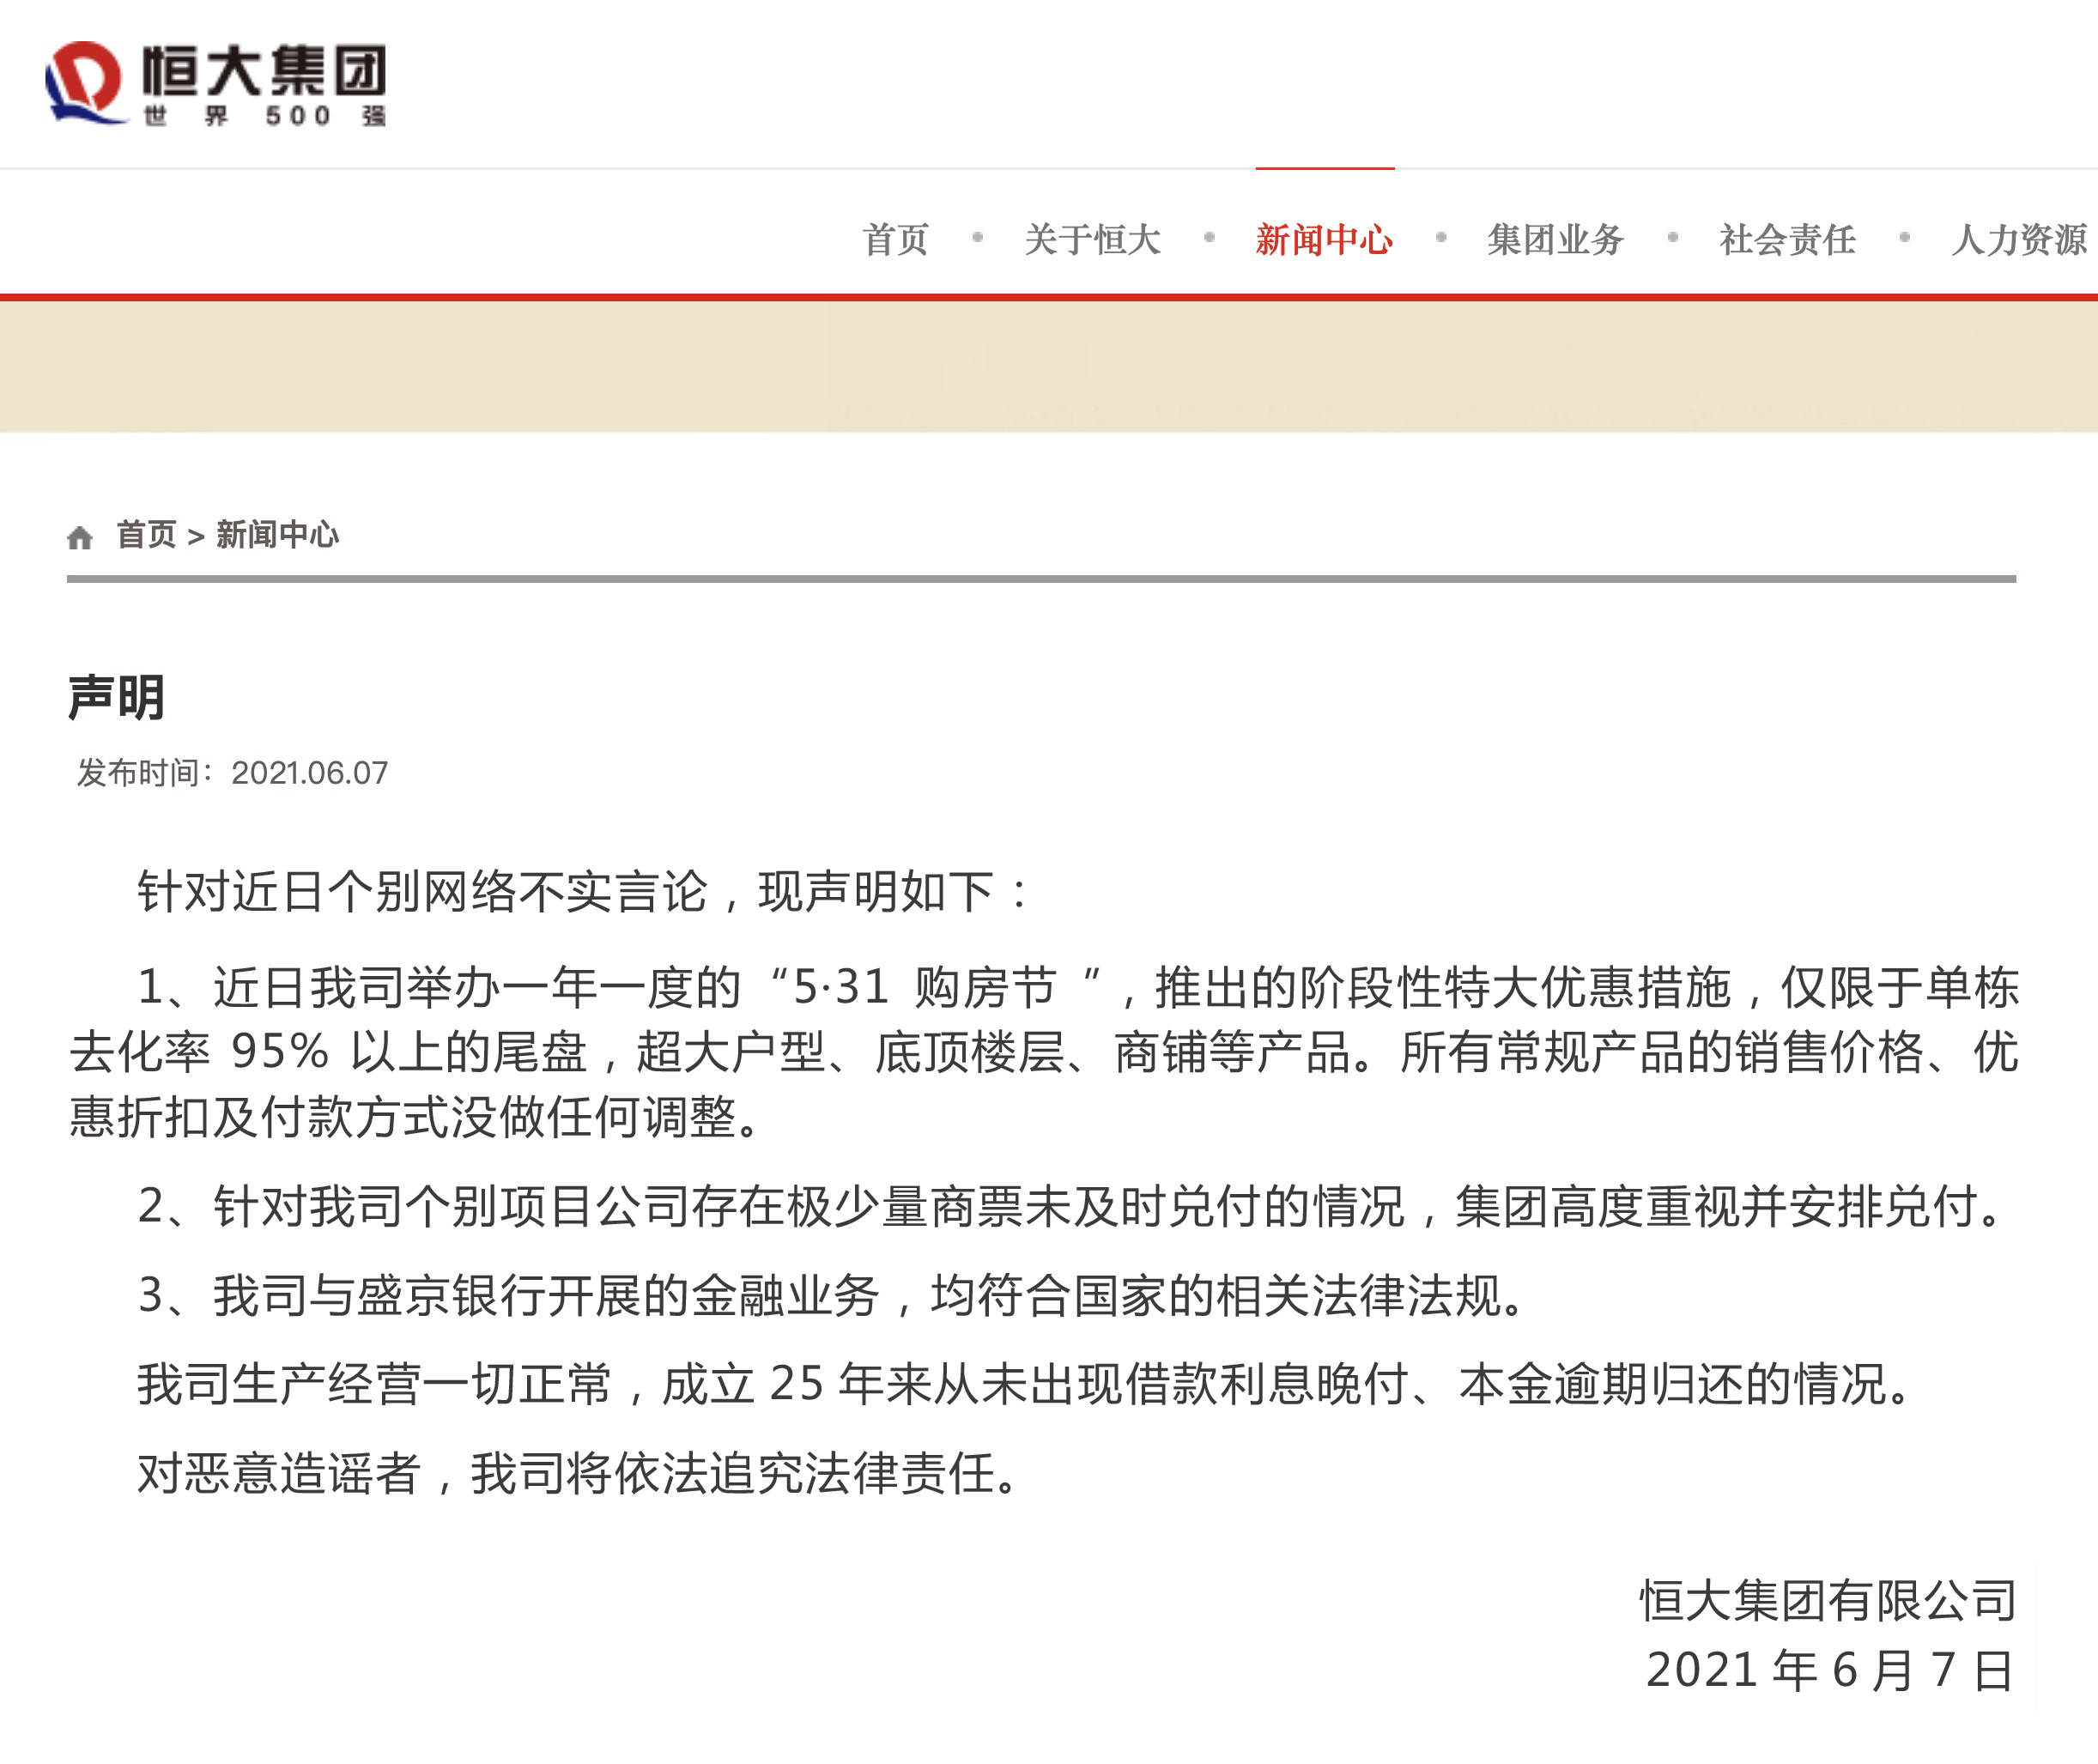 恒大集体声明：公司筹谋正常，与盛京银行互助合法合规